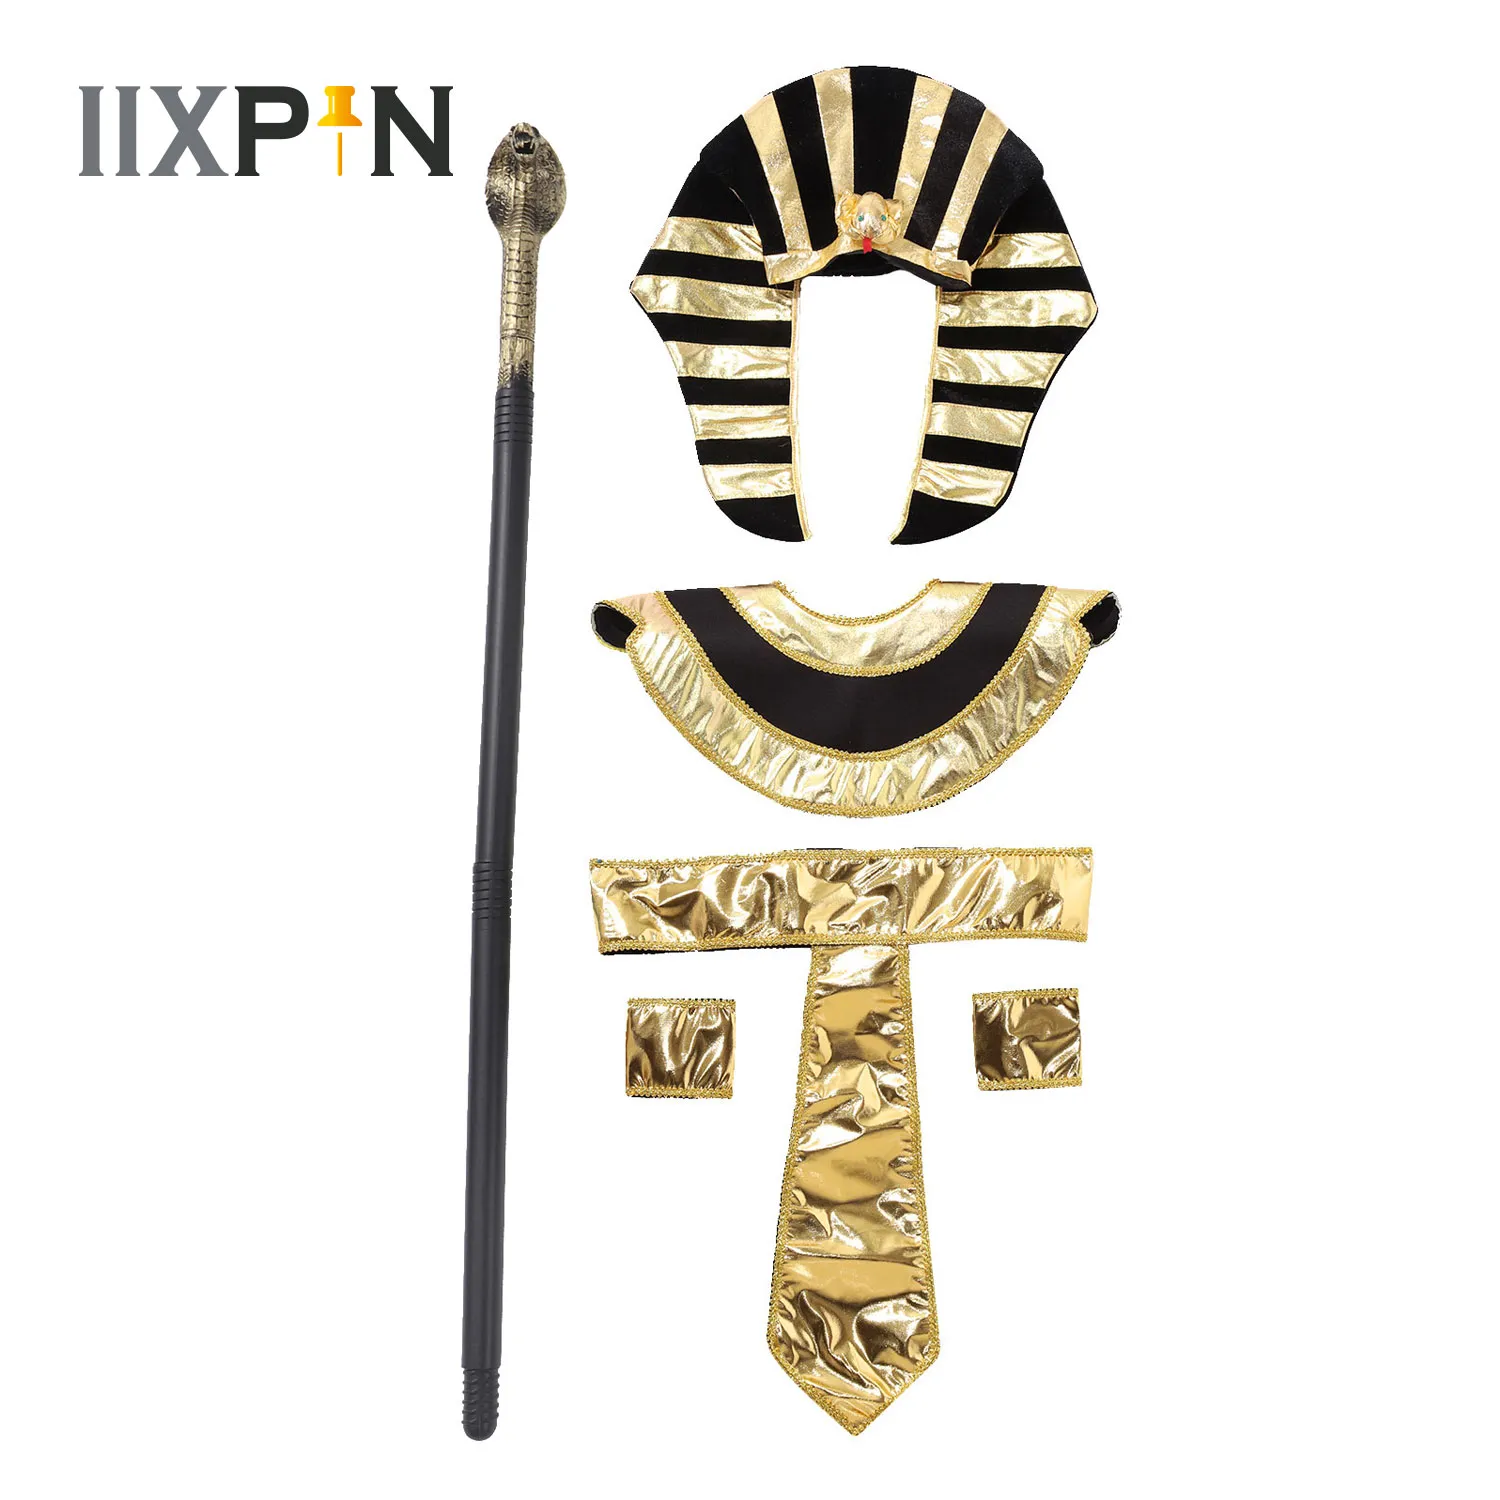 Männer Frauen alte ägyptische Pharao Cosplay Kostüm Accessoire Halloween Gold -Trims Cleopatra Antike römische Königin Party Requisiten